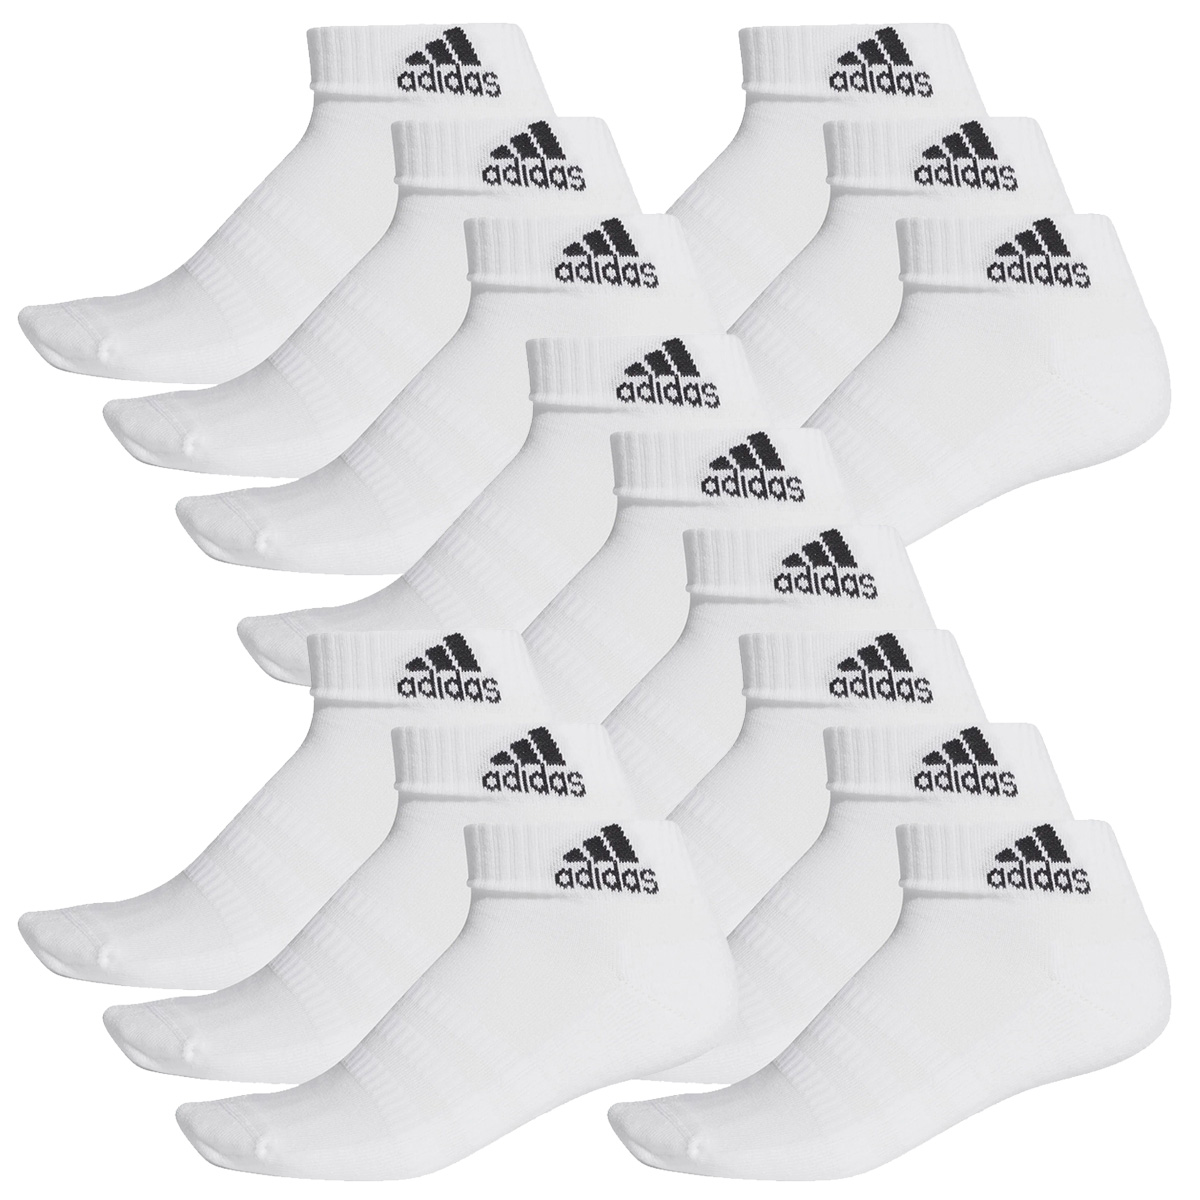 adidas Ankle / Quarter Socken Unisex Kurzsocke Knöchelsocke 15 Paar